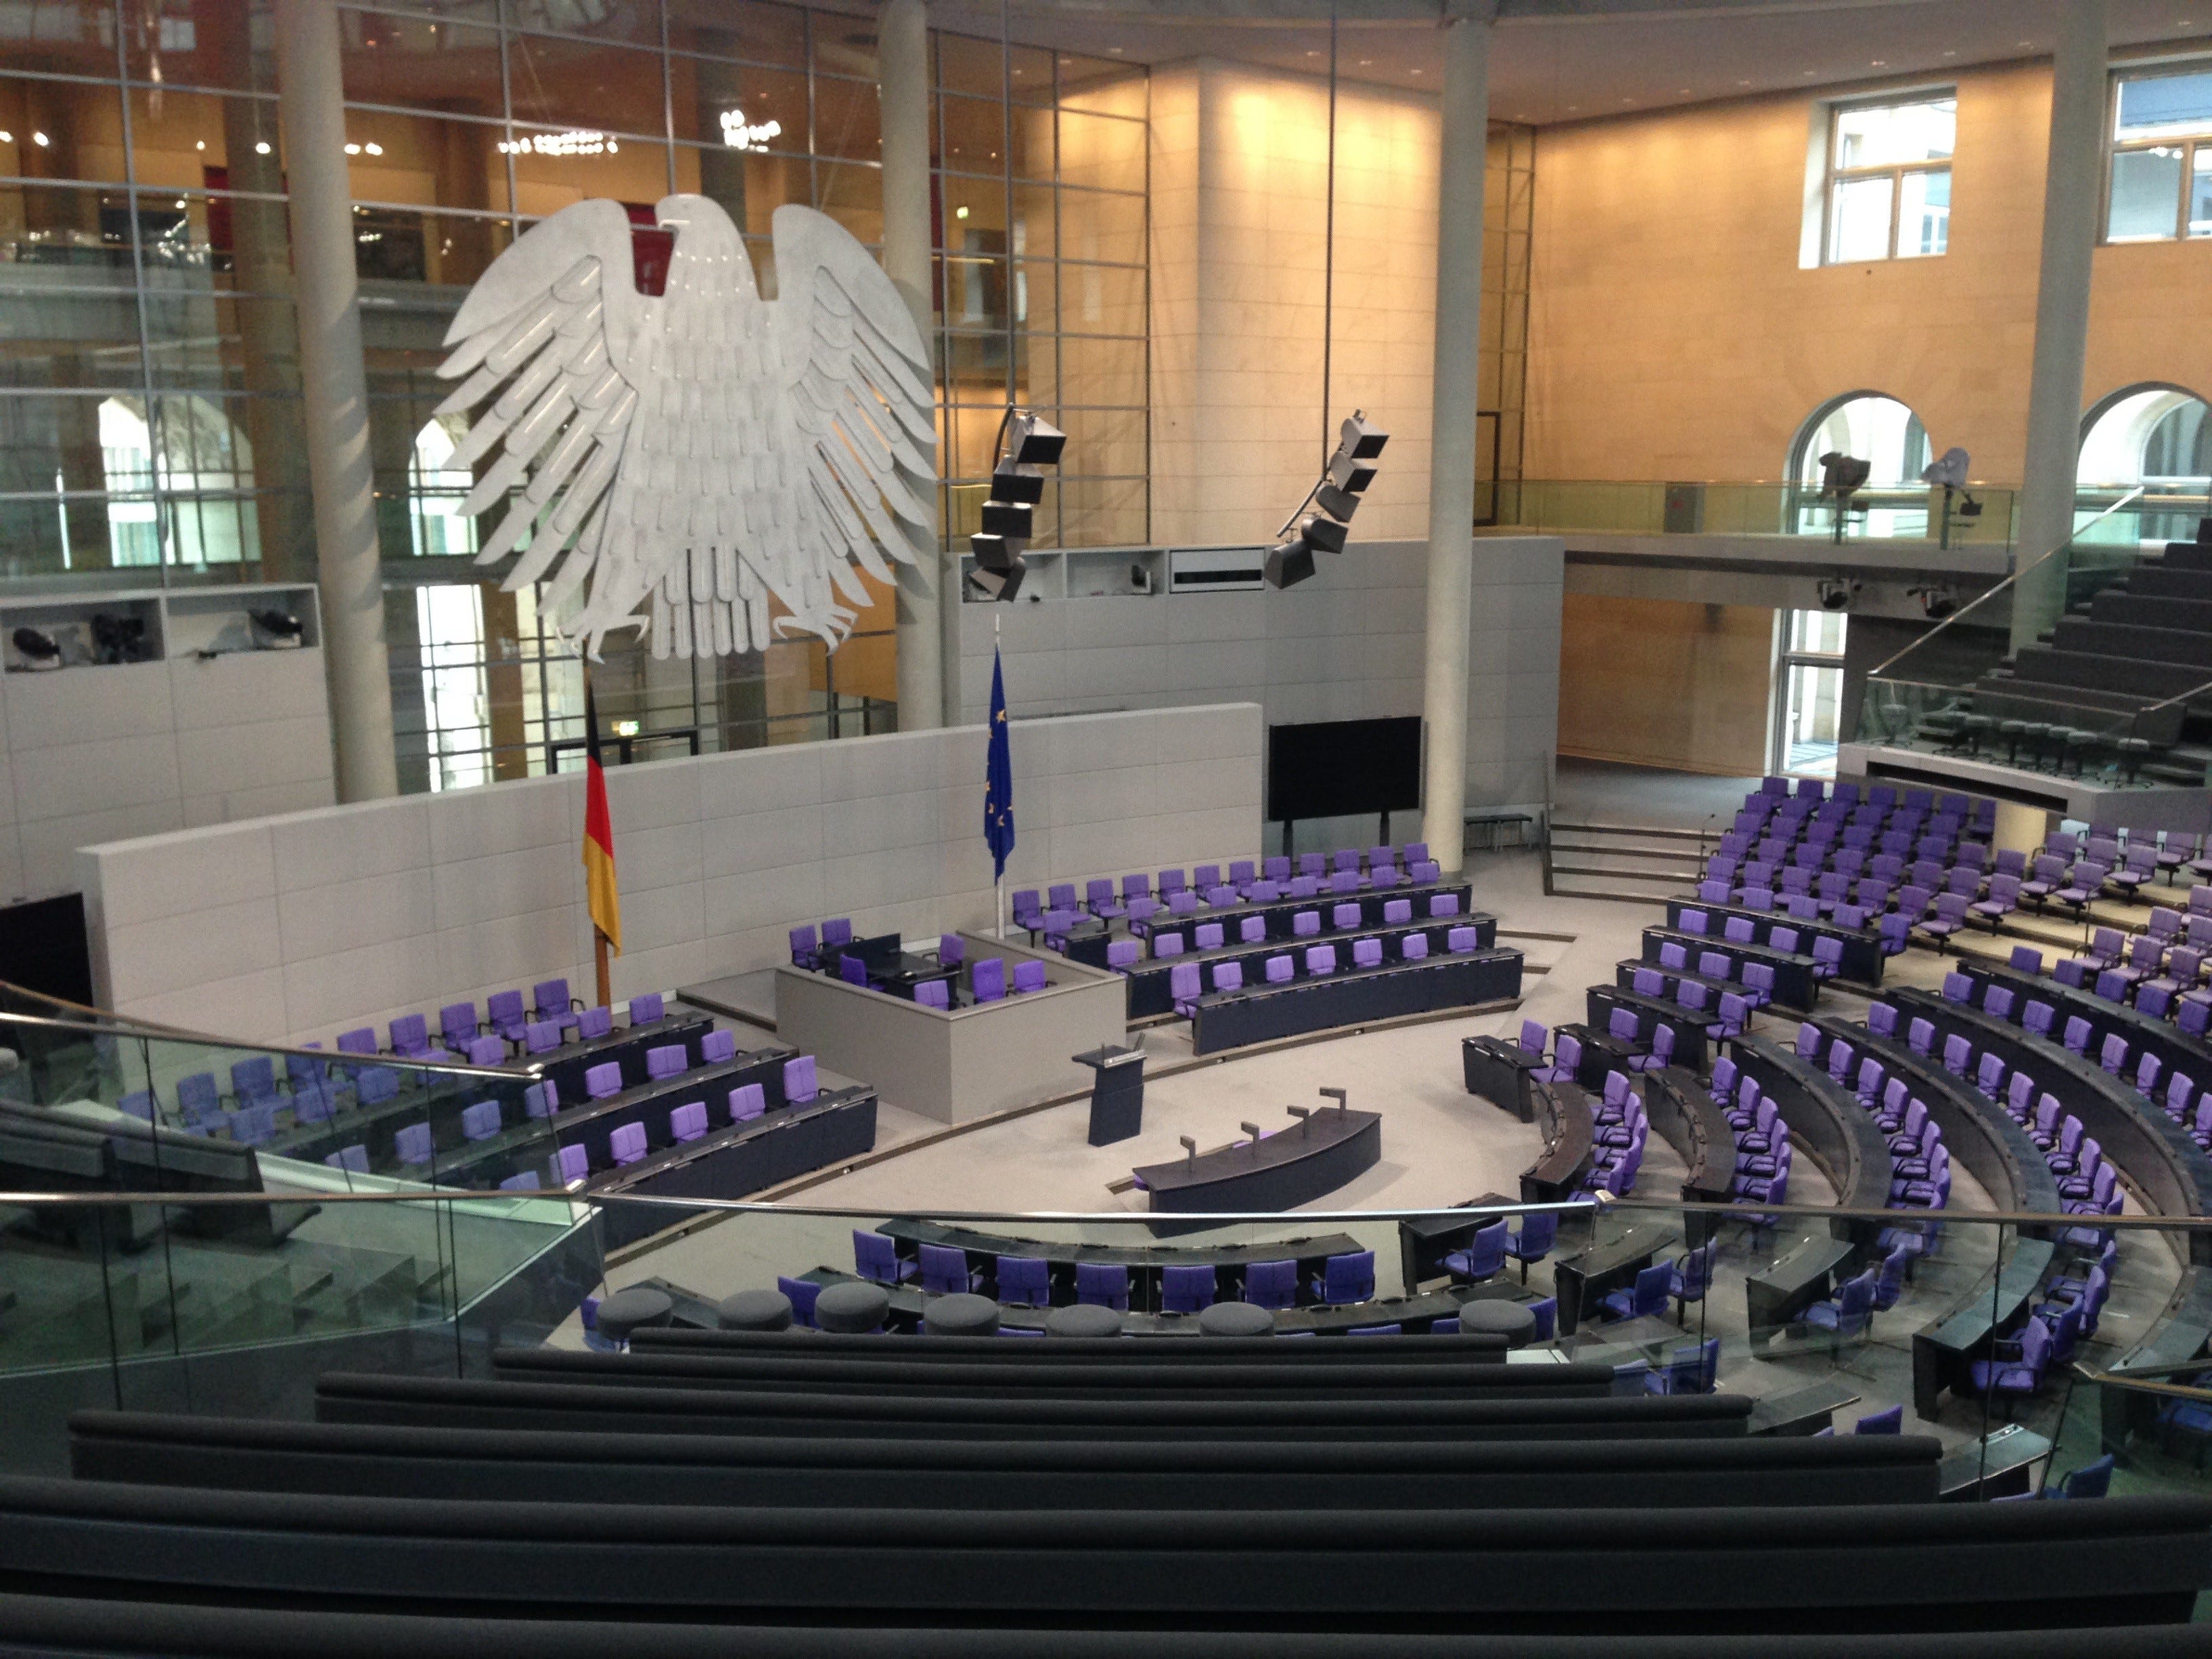 german parliament building tour